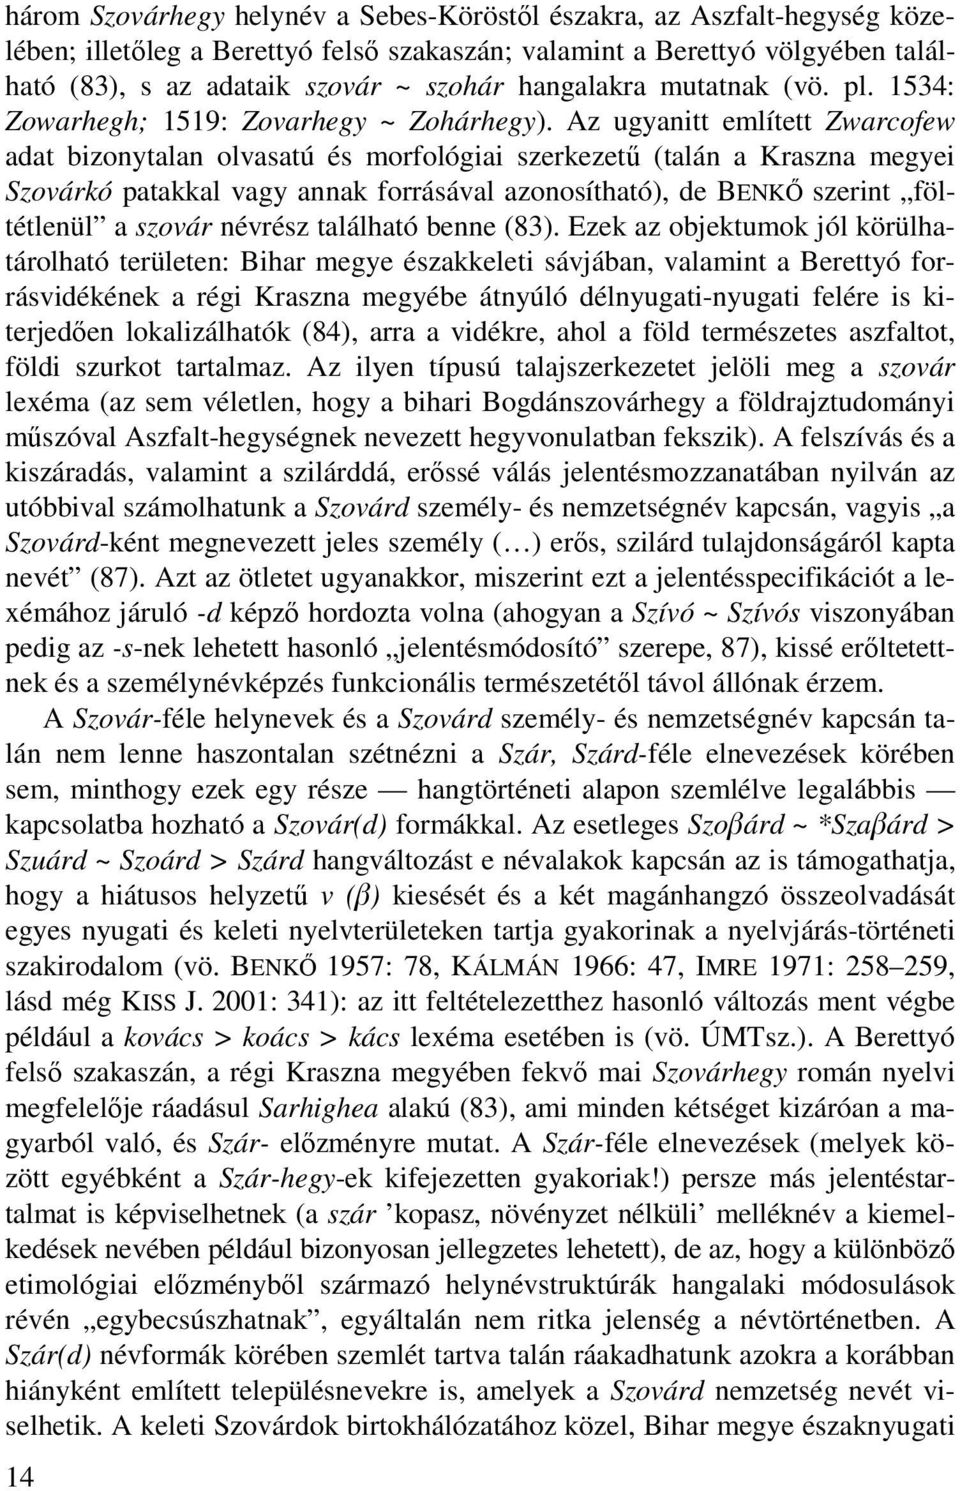 Az ugyanitt említett Zwarcofew adat bizonytalan olvasatú és morfológiai szerkezetű (talán a Kraszna megyei Szovárkó patakkal vagy annak forrásával azonosítható), de BENKŐ szerint föltétlenül a szovár